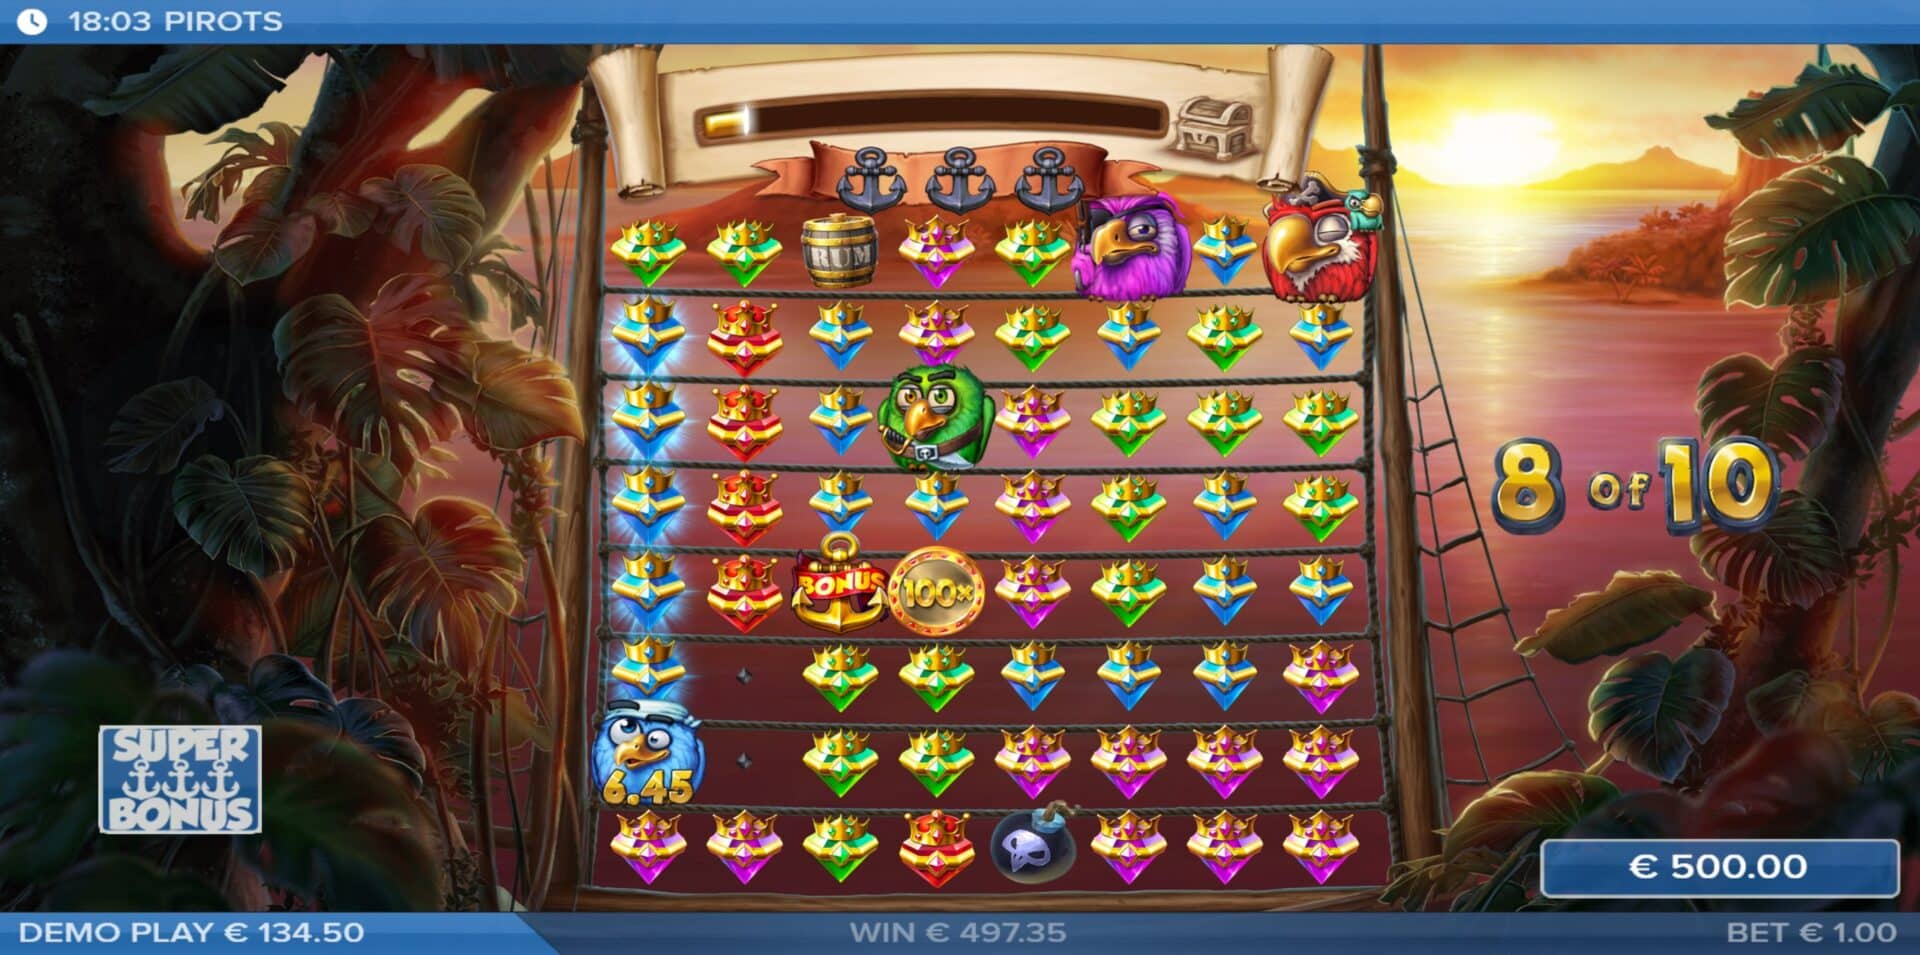 Pirots Slot - Super Bonus